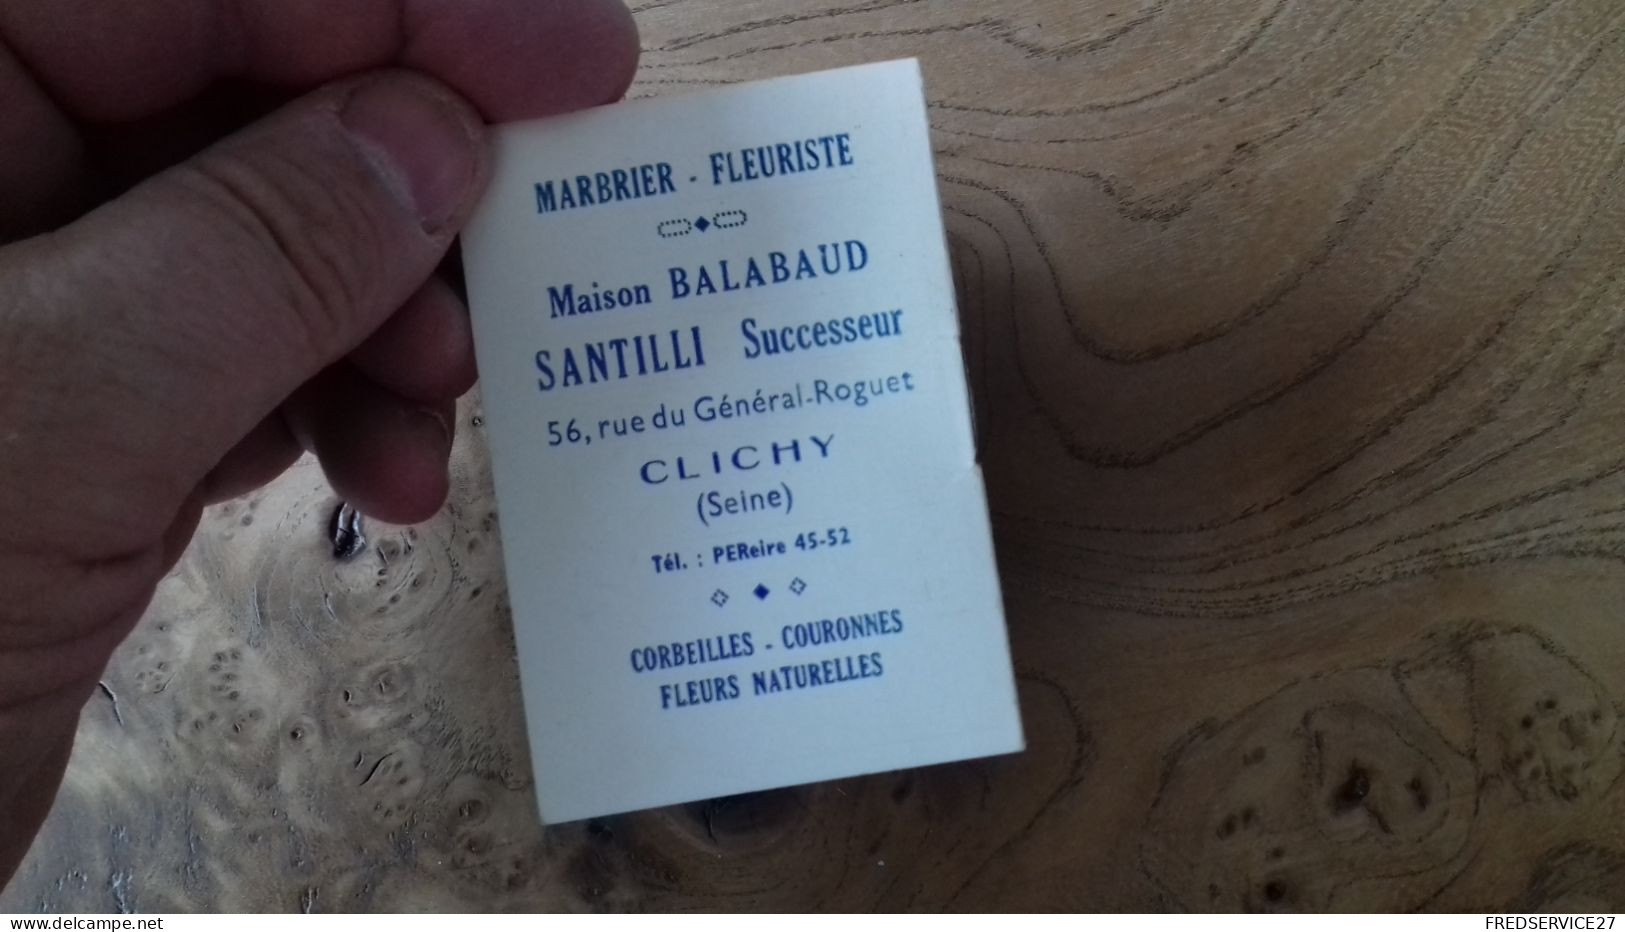 219 /  CALENDRIER MARBRIER FLEURISTE MAISON BALABAUD  SANTILLI SUCCESSEUR CLICHY SEINE - Petit Format : 1941-60